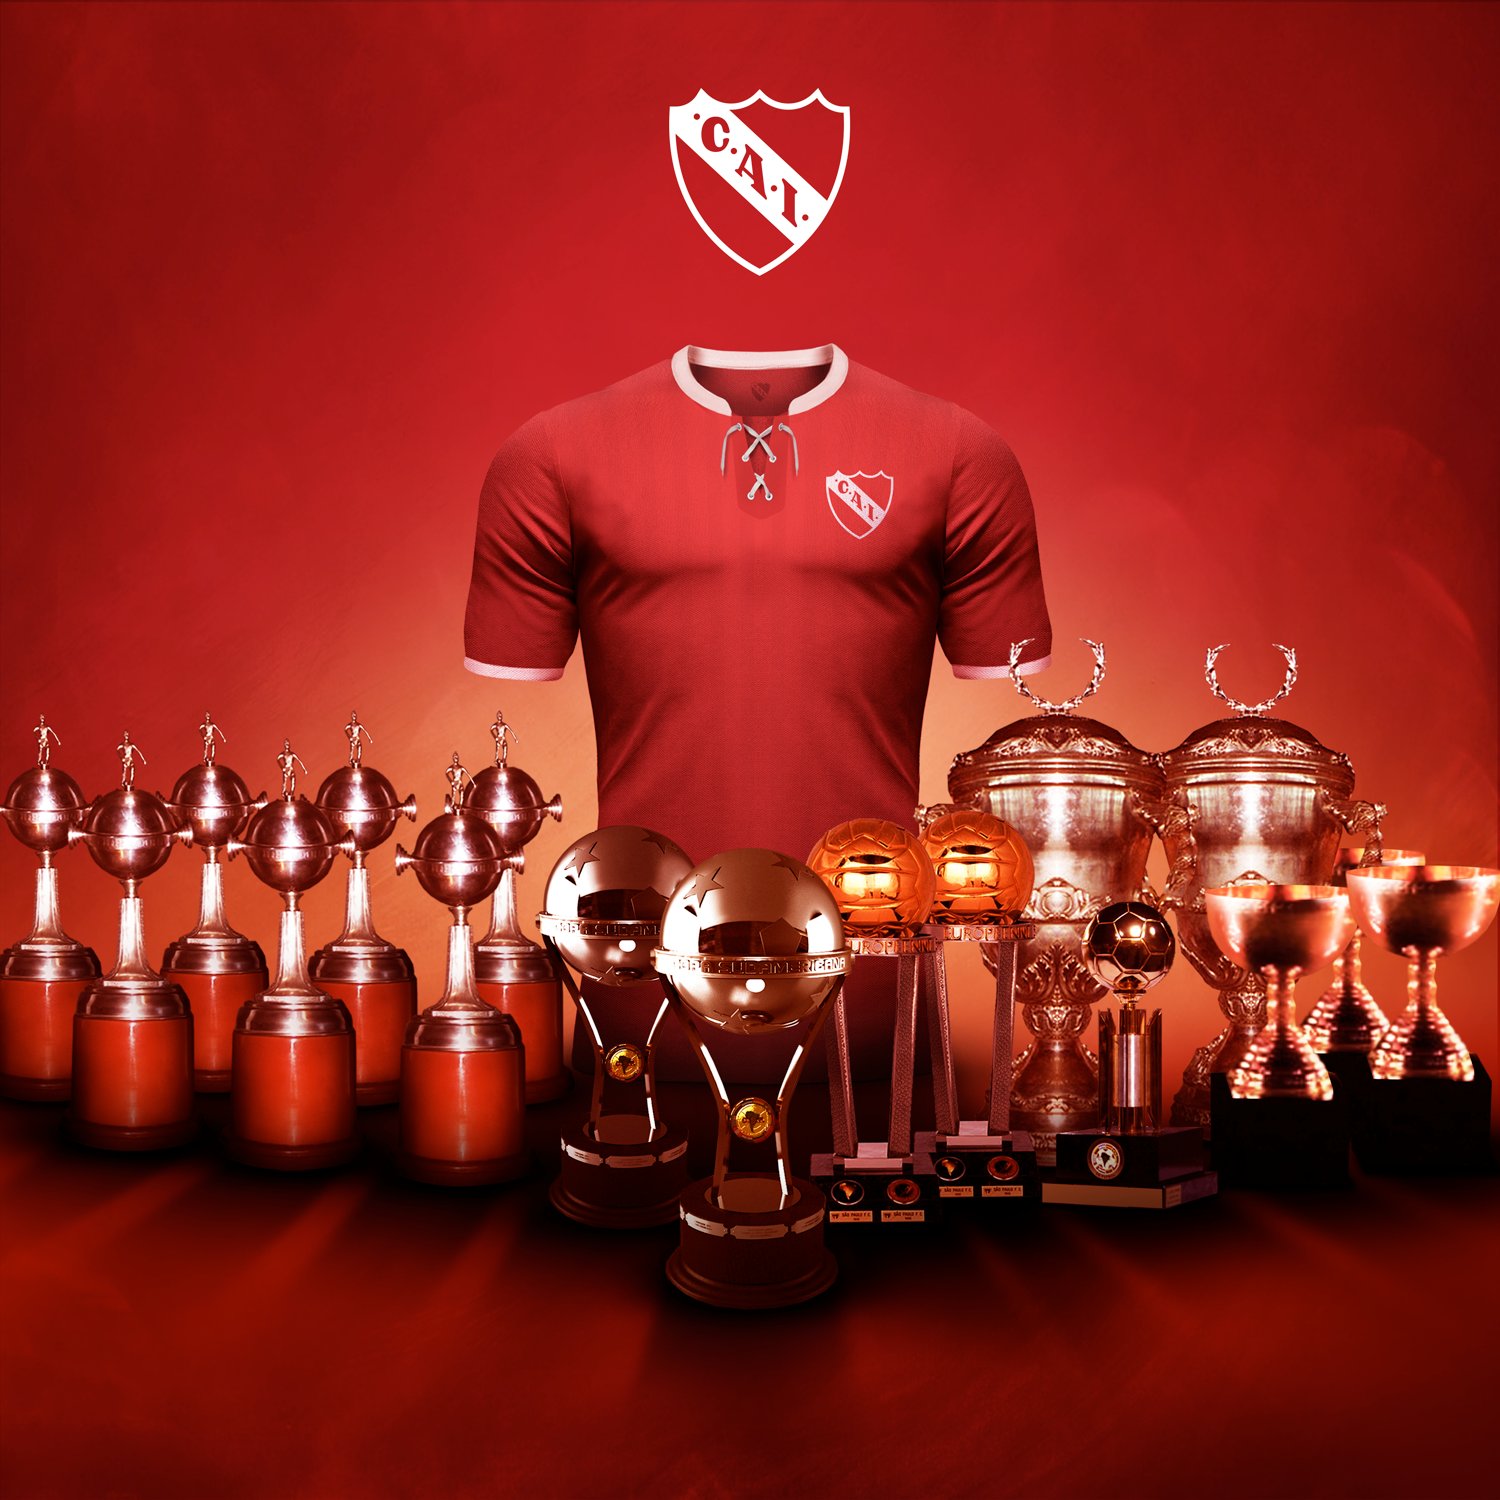 2017 Club Atlético Independiente de Avellaneda